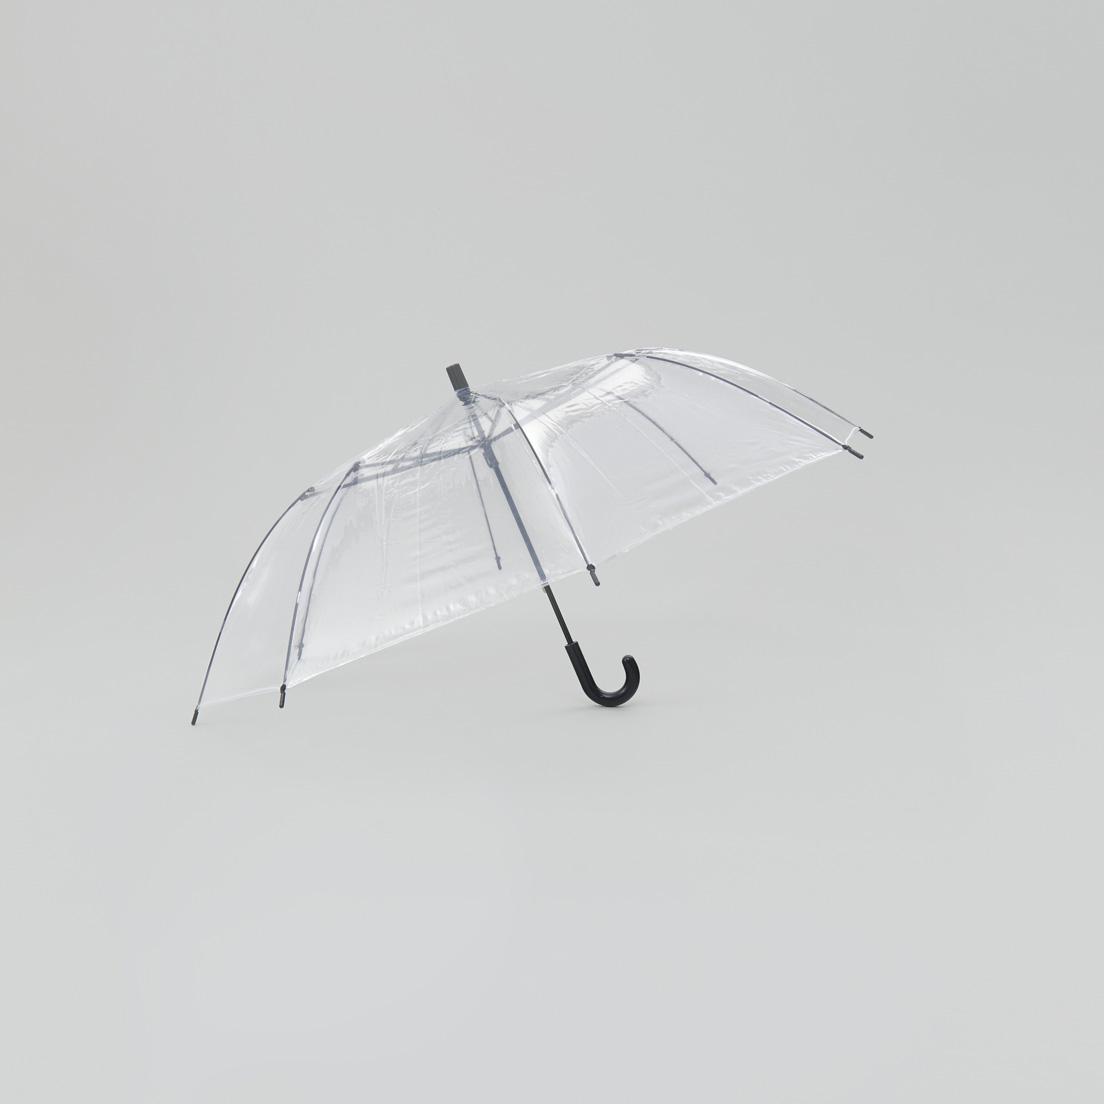 ショートワイド傘〈スギタ〉
長傘と折り畳み傘の長所を併せ持つ《ショートワイド傘》。中棒を短くすることで、全長60㎝とコンパクトなサイズを実現。持つ際に腕がＶ字になるため、負荷がかかりにくく、強い雨風でもしっかりコントロールできる。広げると直径103㎝と長傘同様のゆとりがあり、雨に濡れにくい。1,296円（スギタ TEL 06 6541 0180）。